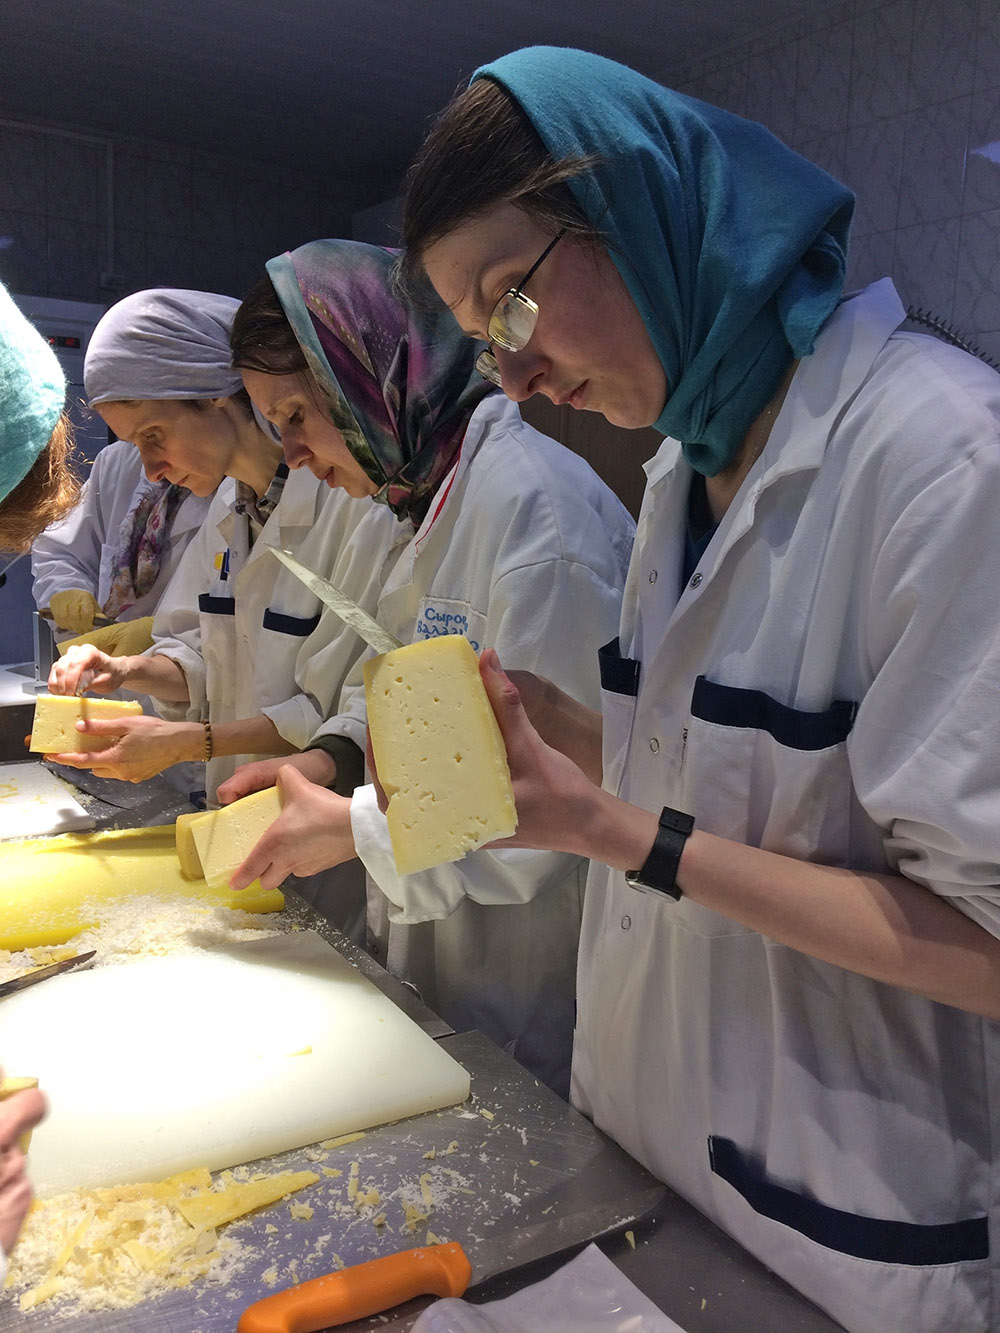 На Валааме есть ферма, где тоже нужна женская помощь. В основном волонтеры нарезают, очищают и упаковывают сыр. Источник: сообщество «Волонтером на остров Валаам» во «Вконтакте»